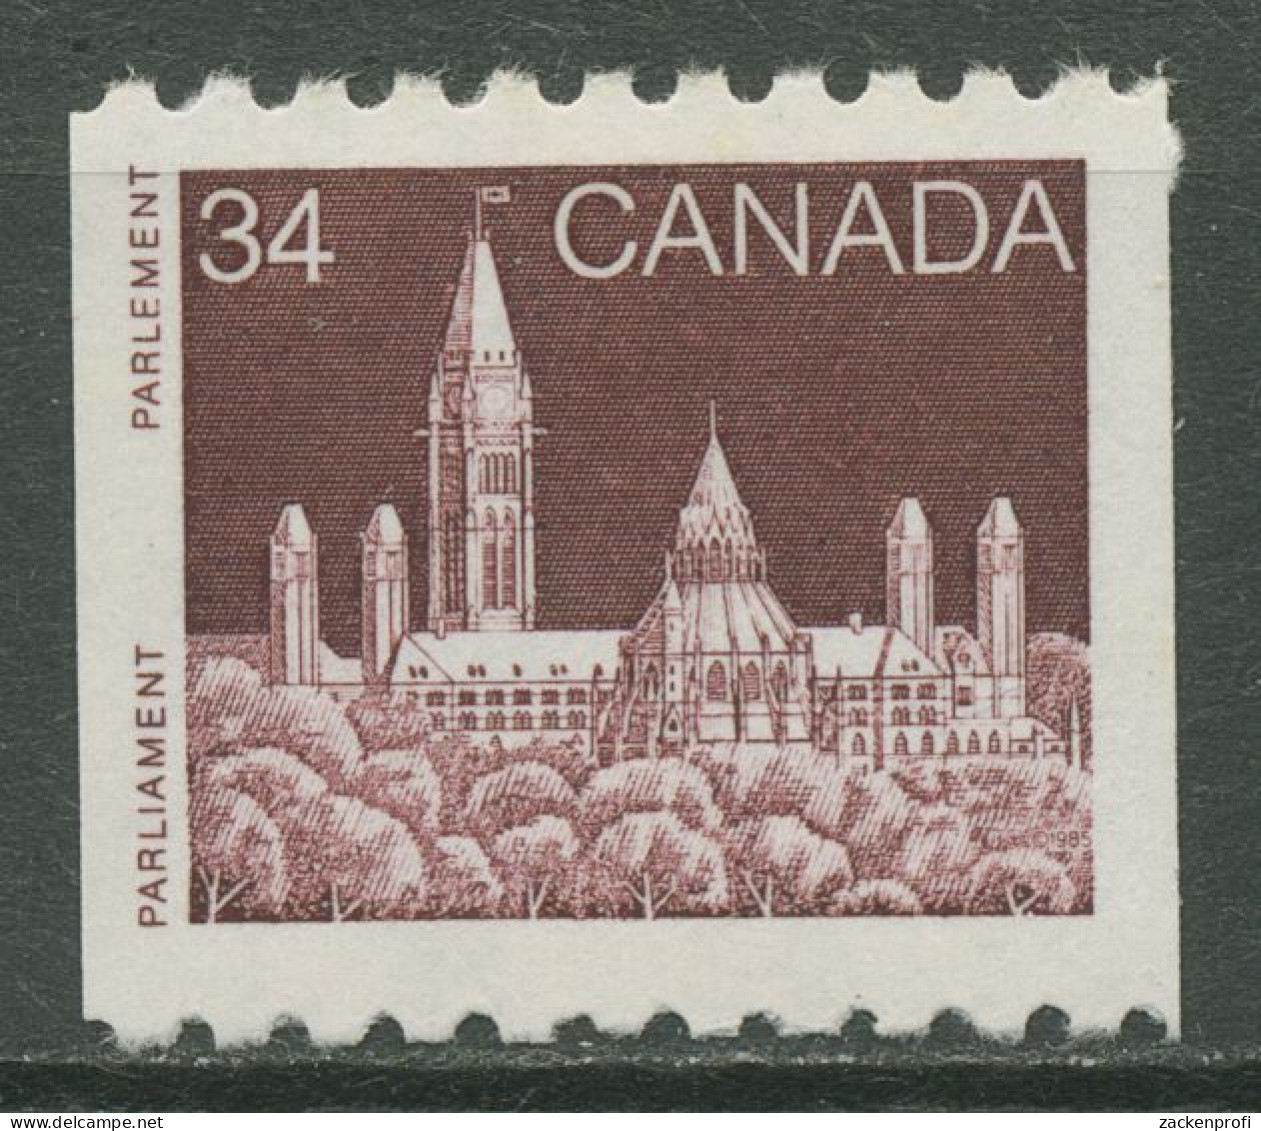 Kanada 1985 Parlamentsgebäude In Ottawa 968 Postfrisch - Neufs